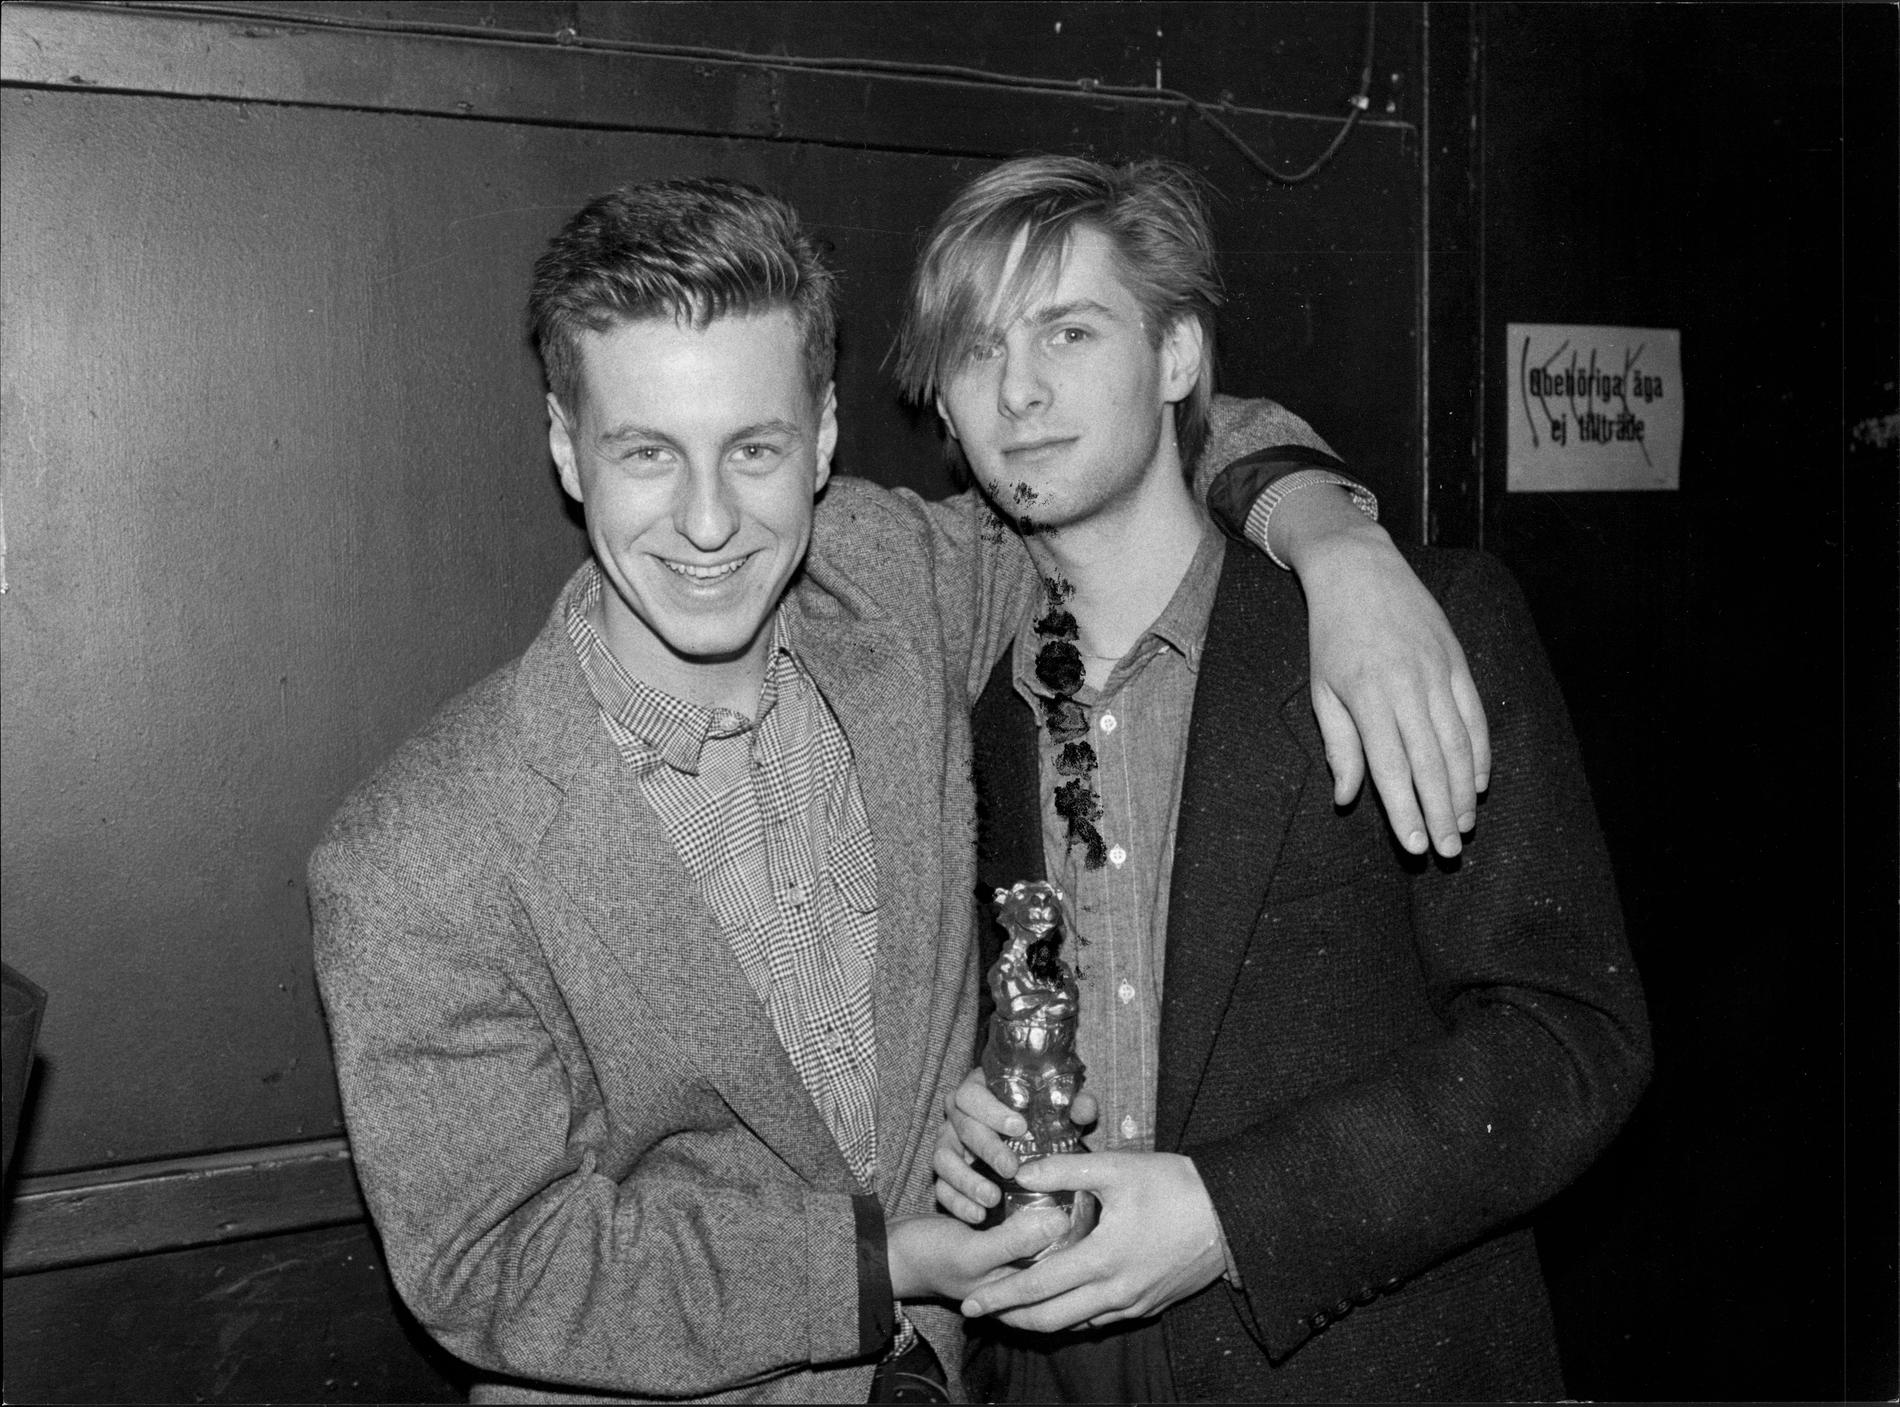 Mauro Scocco och Johan Ekelund var duon Ratata på 80-talet. 1985 vann de Aftonbladets musikpris Rockbjörnen för bästa grupp. 